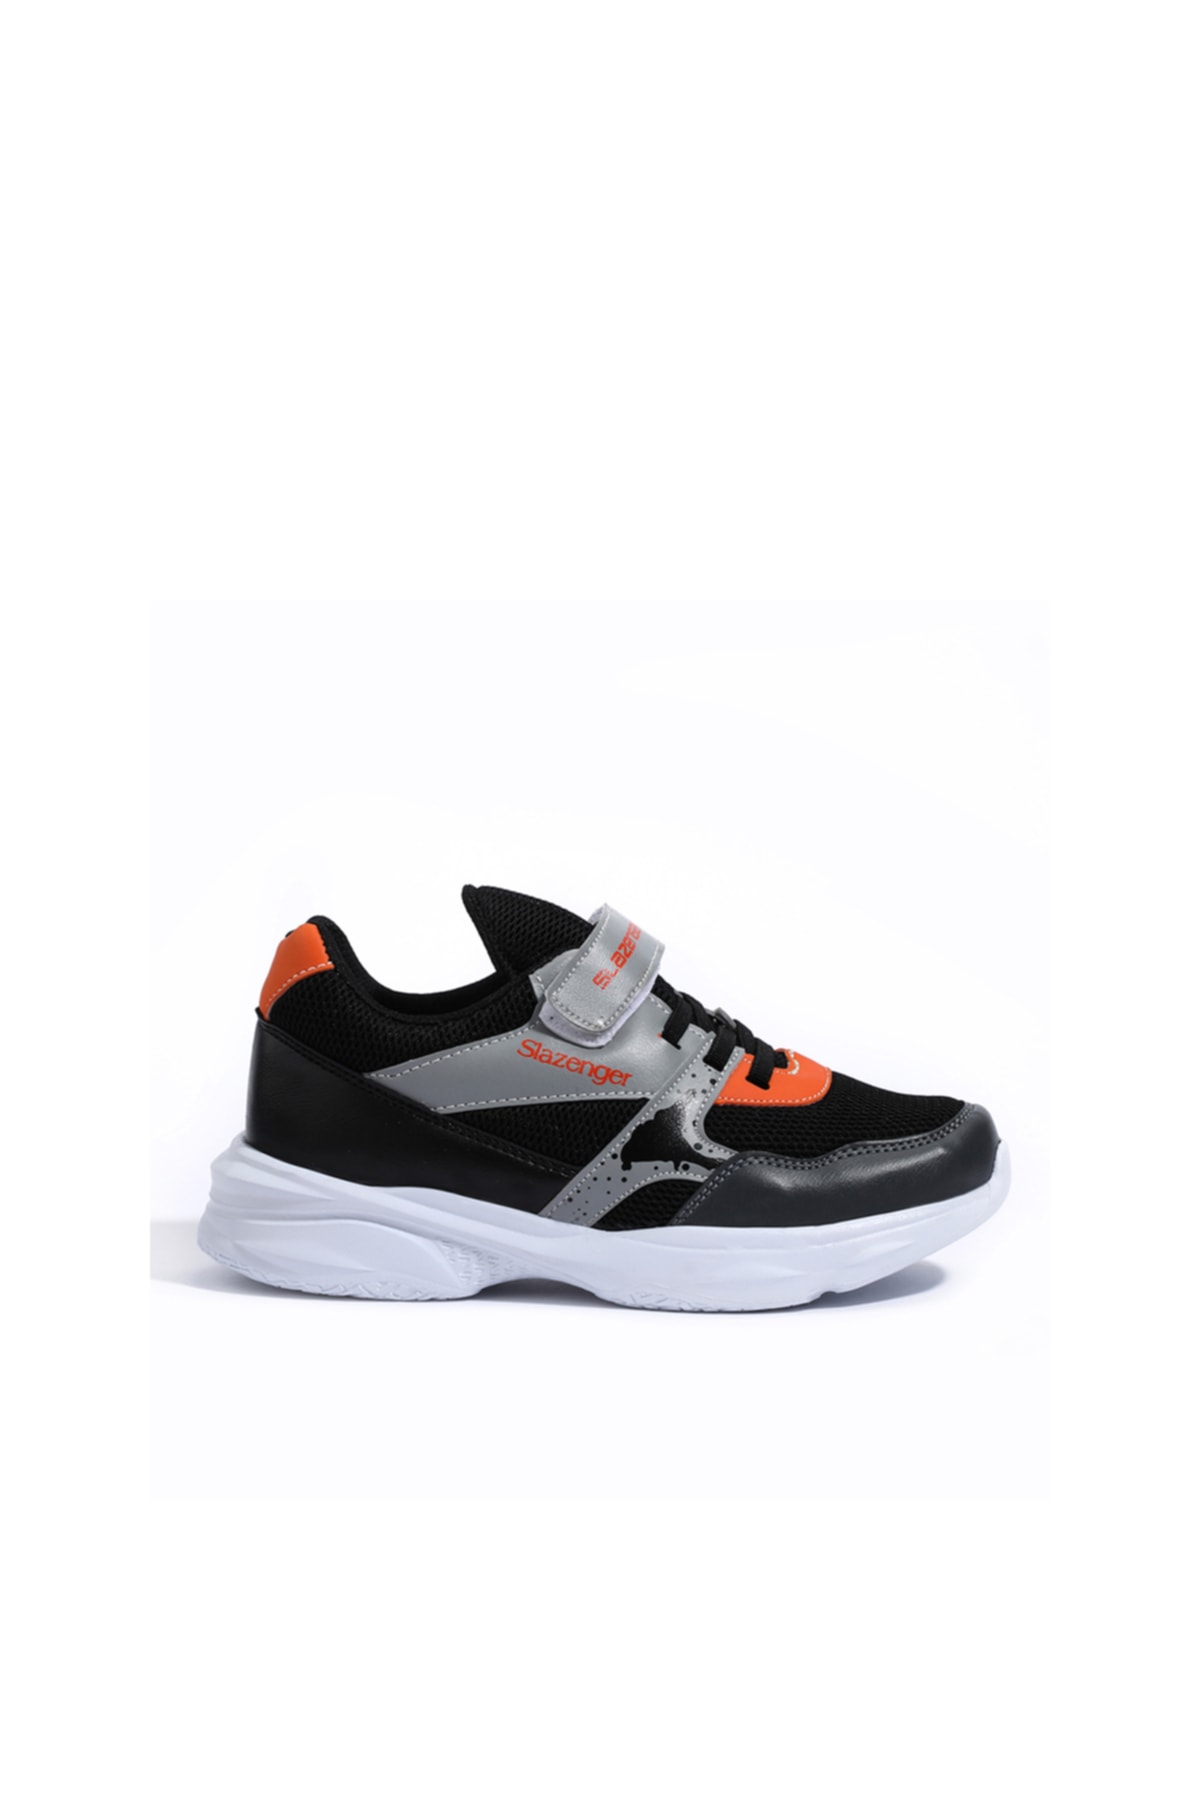 Slazenger Kunt I Sneaker Boys' Shoes Black / Gray